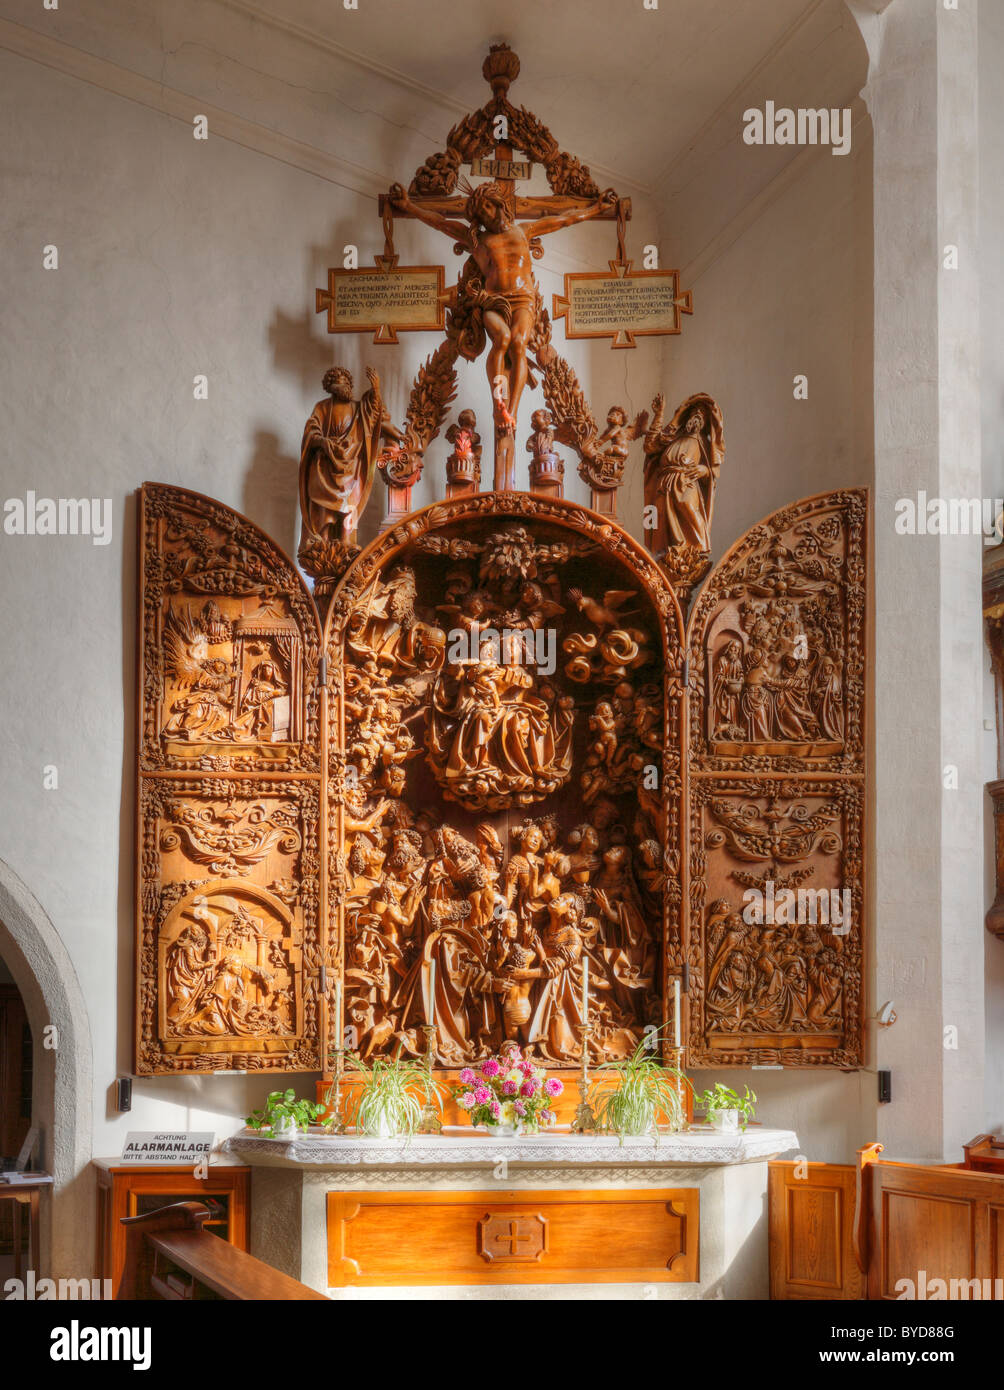 Stile tardo gotico altare intagliato nella Wallfahrtskirche Mauer la chiesa del pellegrinaggio presso Melk, Wachau, Mostviertel regione, Austria inferiore Foto Stock